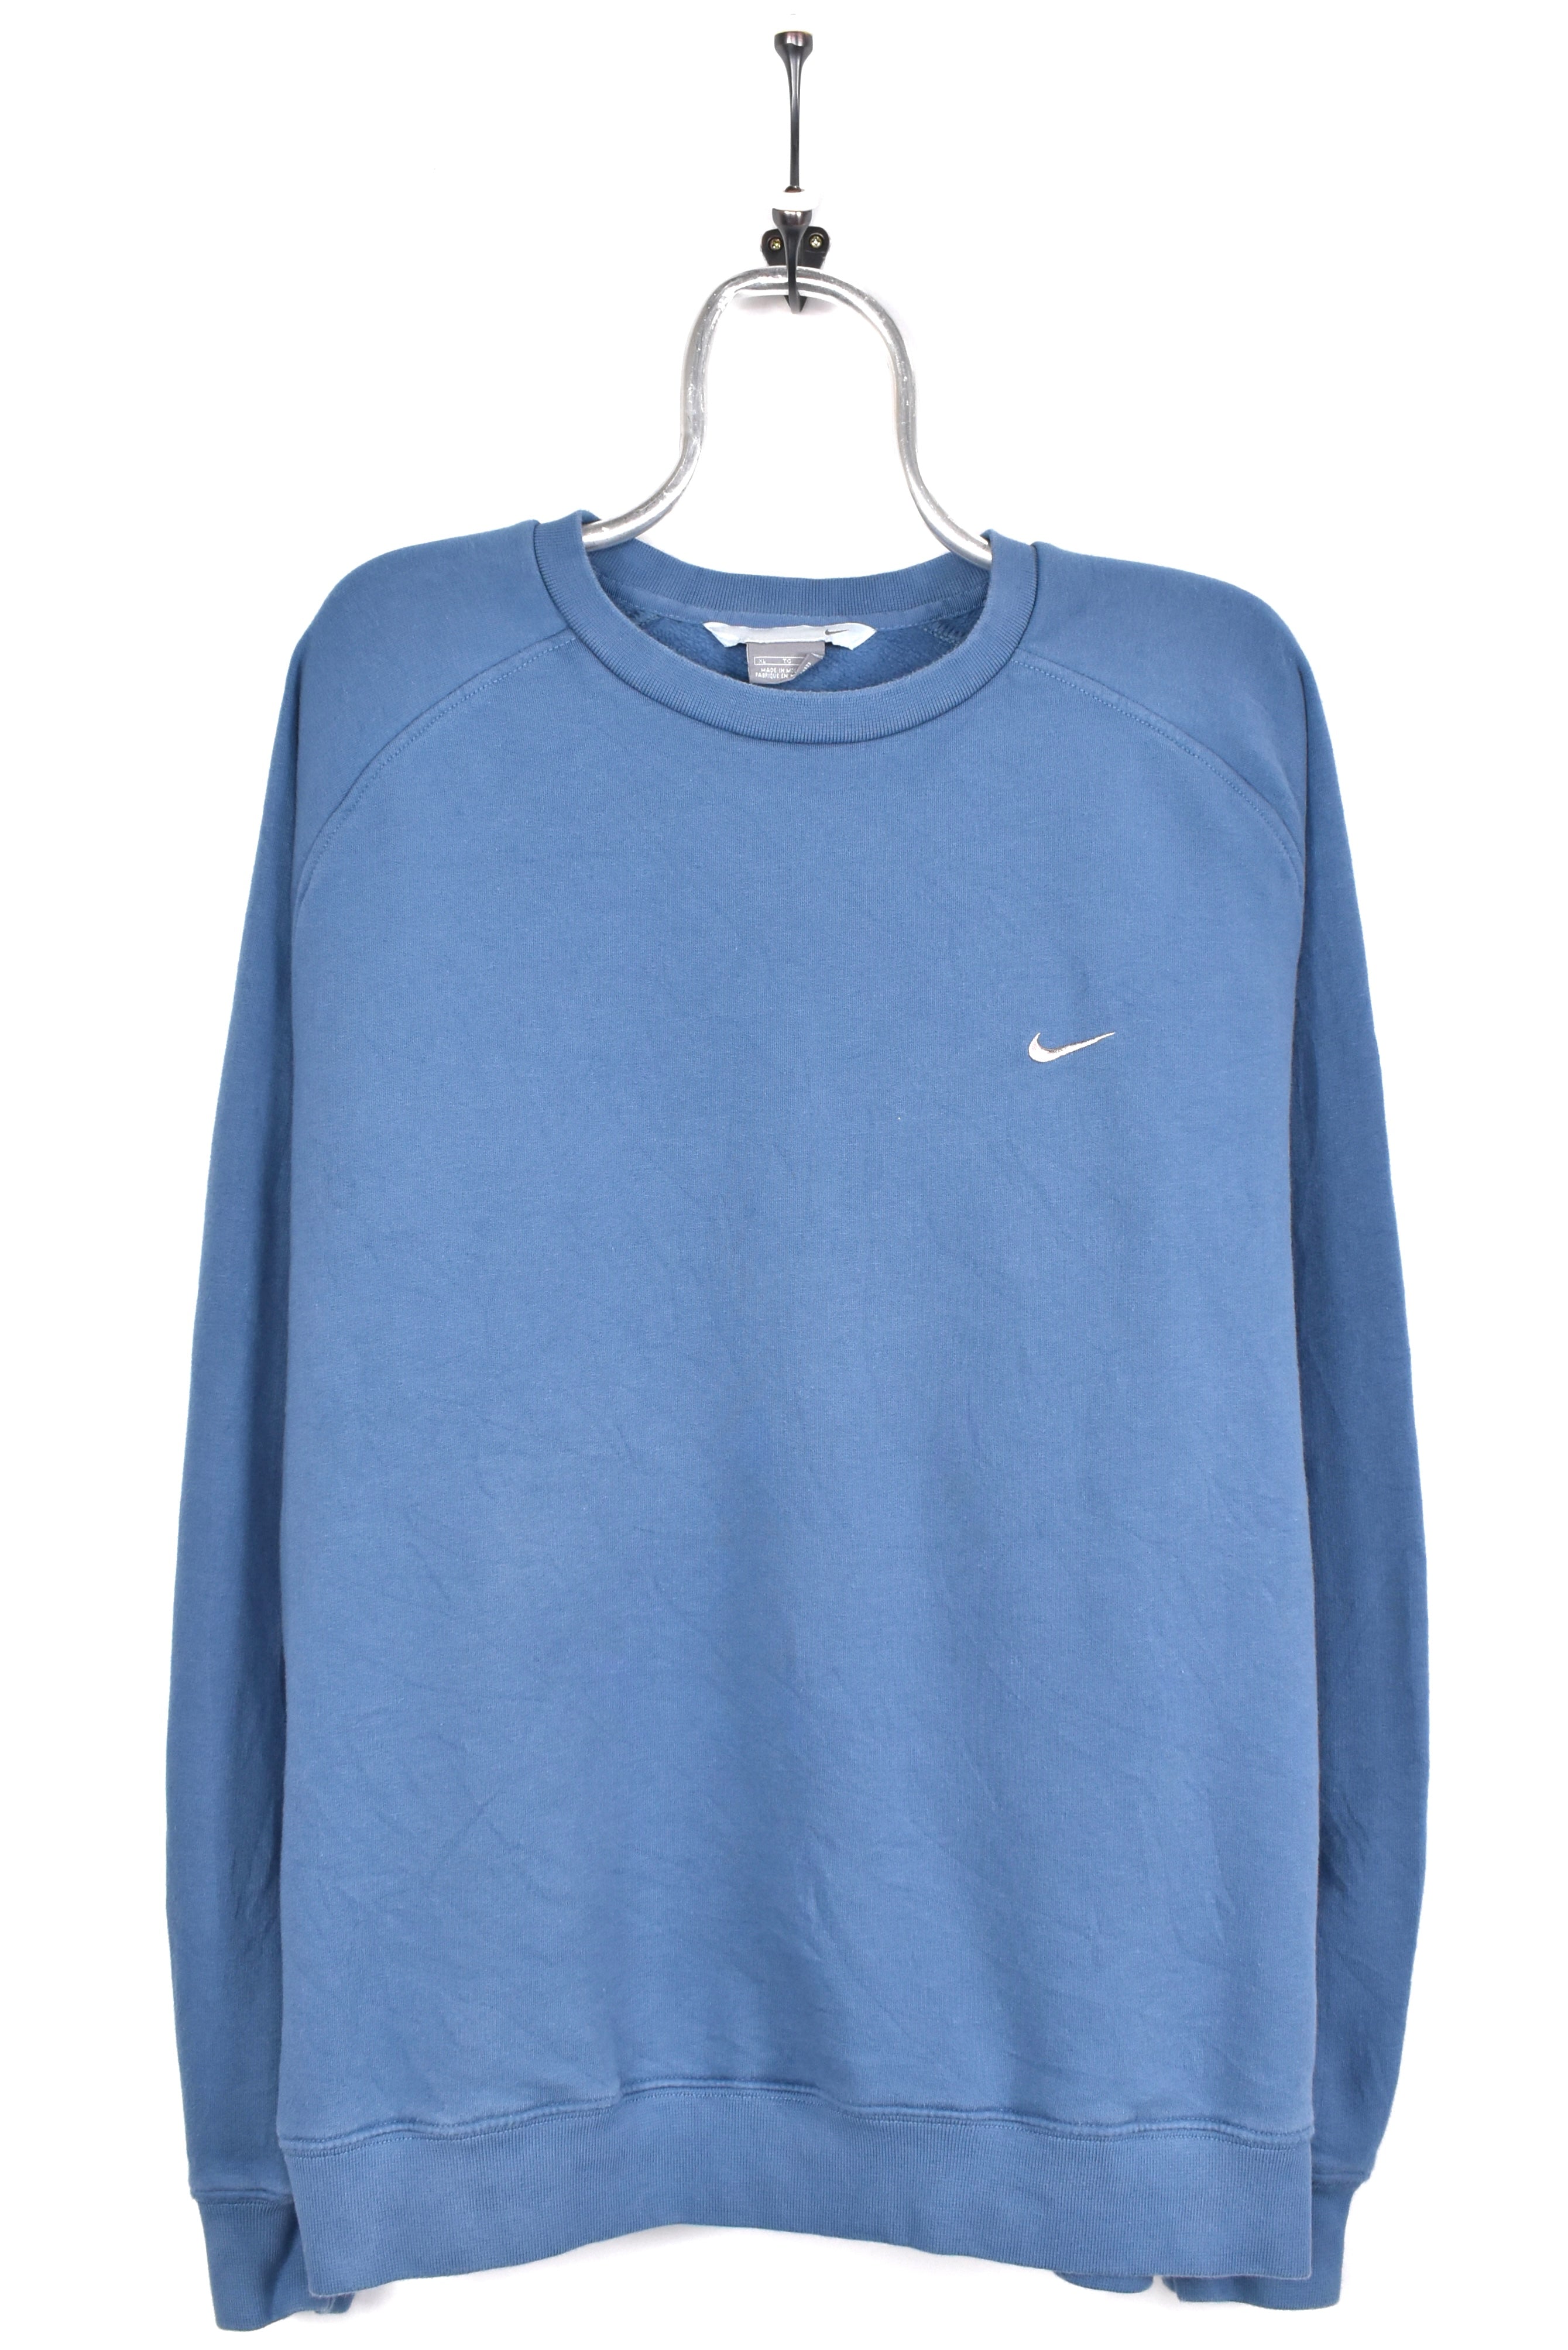 Vintage Nike sweatshirt, blue embroidered crewneck - AU XL NIKE